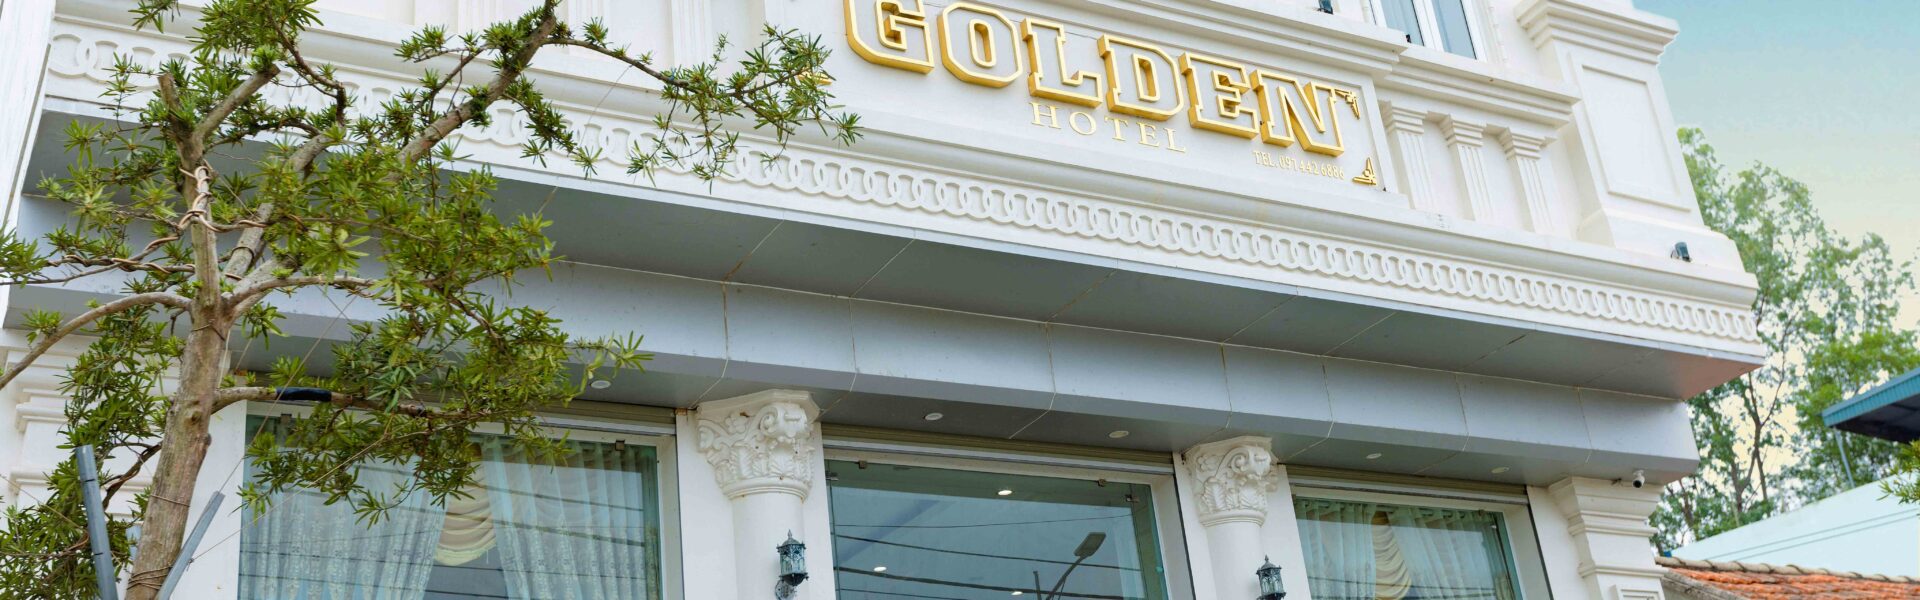 Khách sạn Golden Coto – Khách sạn 3 sao hàng đầu đảo Cô Tô - Ảnh đại diện